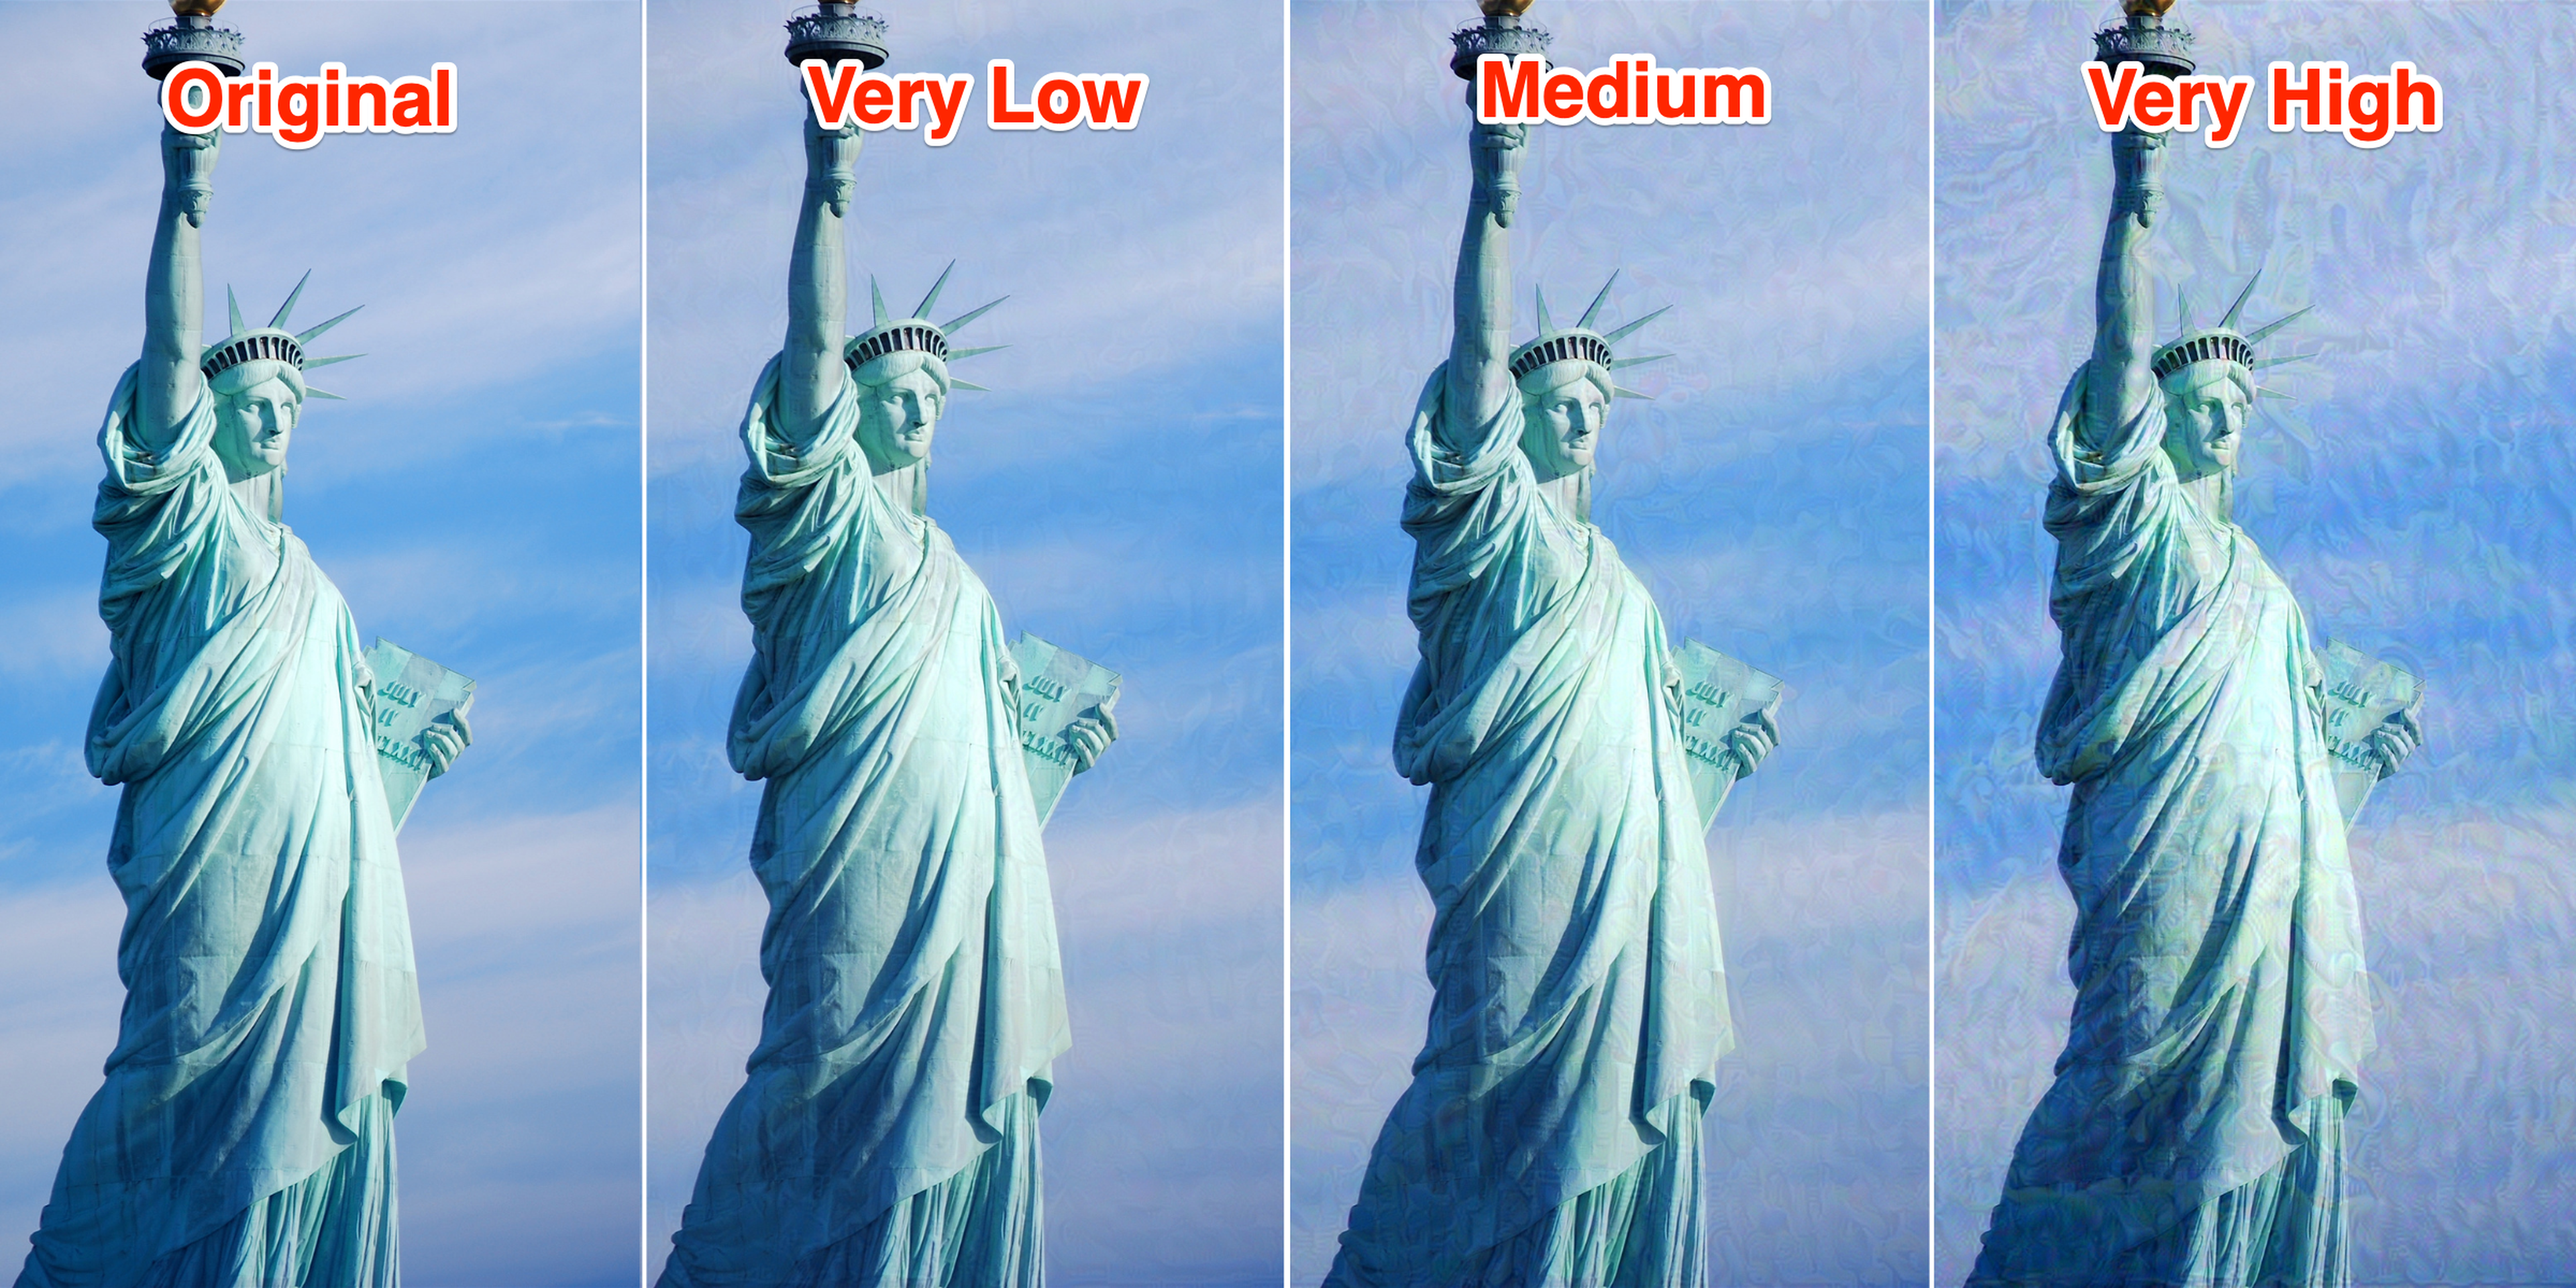 Esta imagen de la Estatua de la Libertad (a la izquierda) se volvió a renderizar con Glaze utilizando los ajustes de intensidad muy baja (segundo por la izquierda), media (segundo por la derecha) y muy alta (a la derecha).